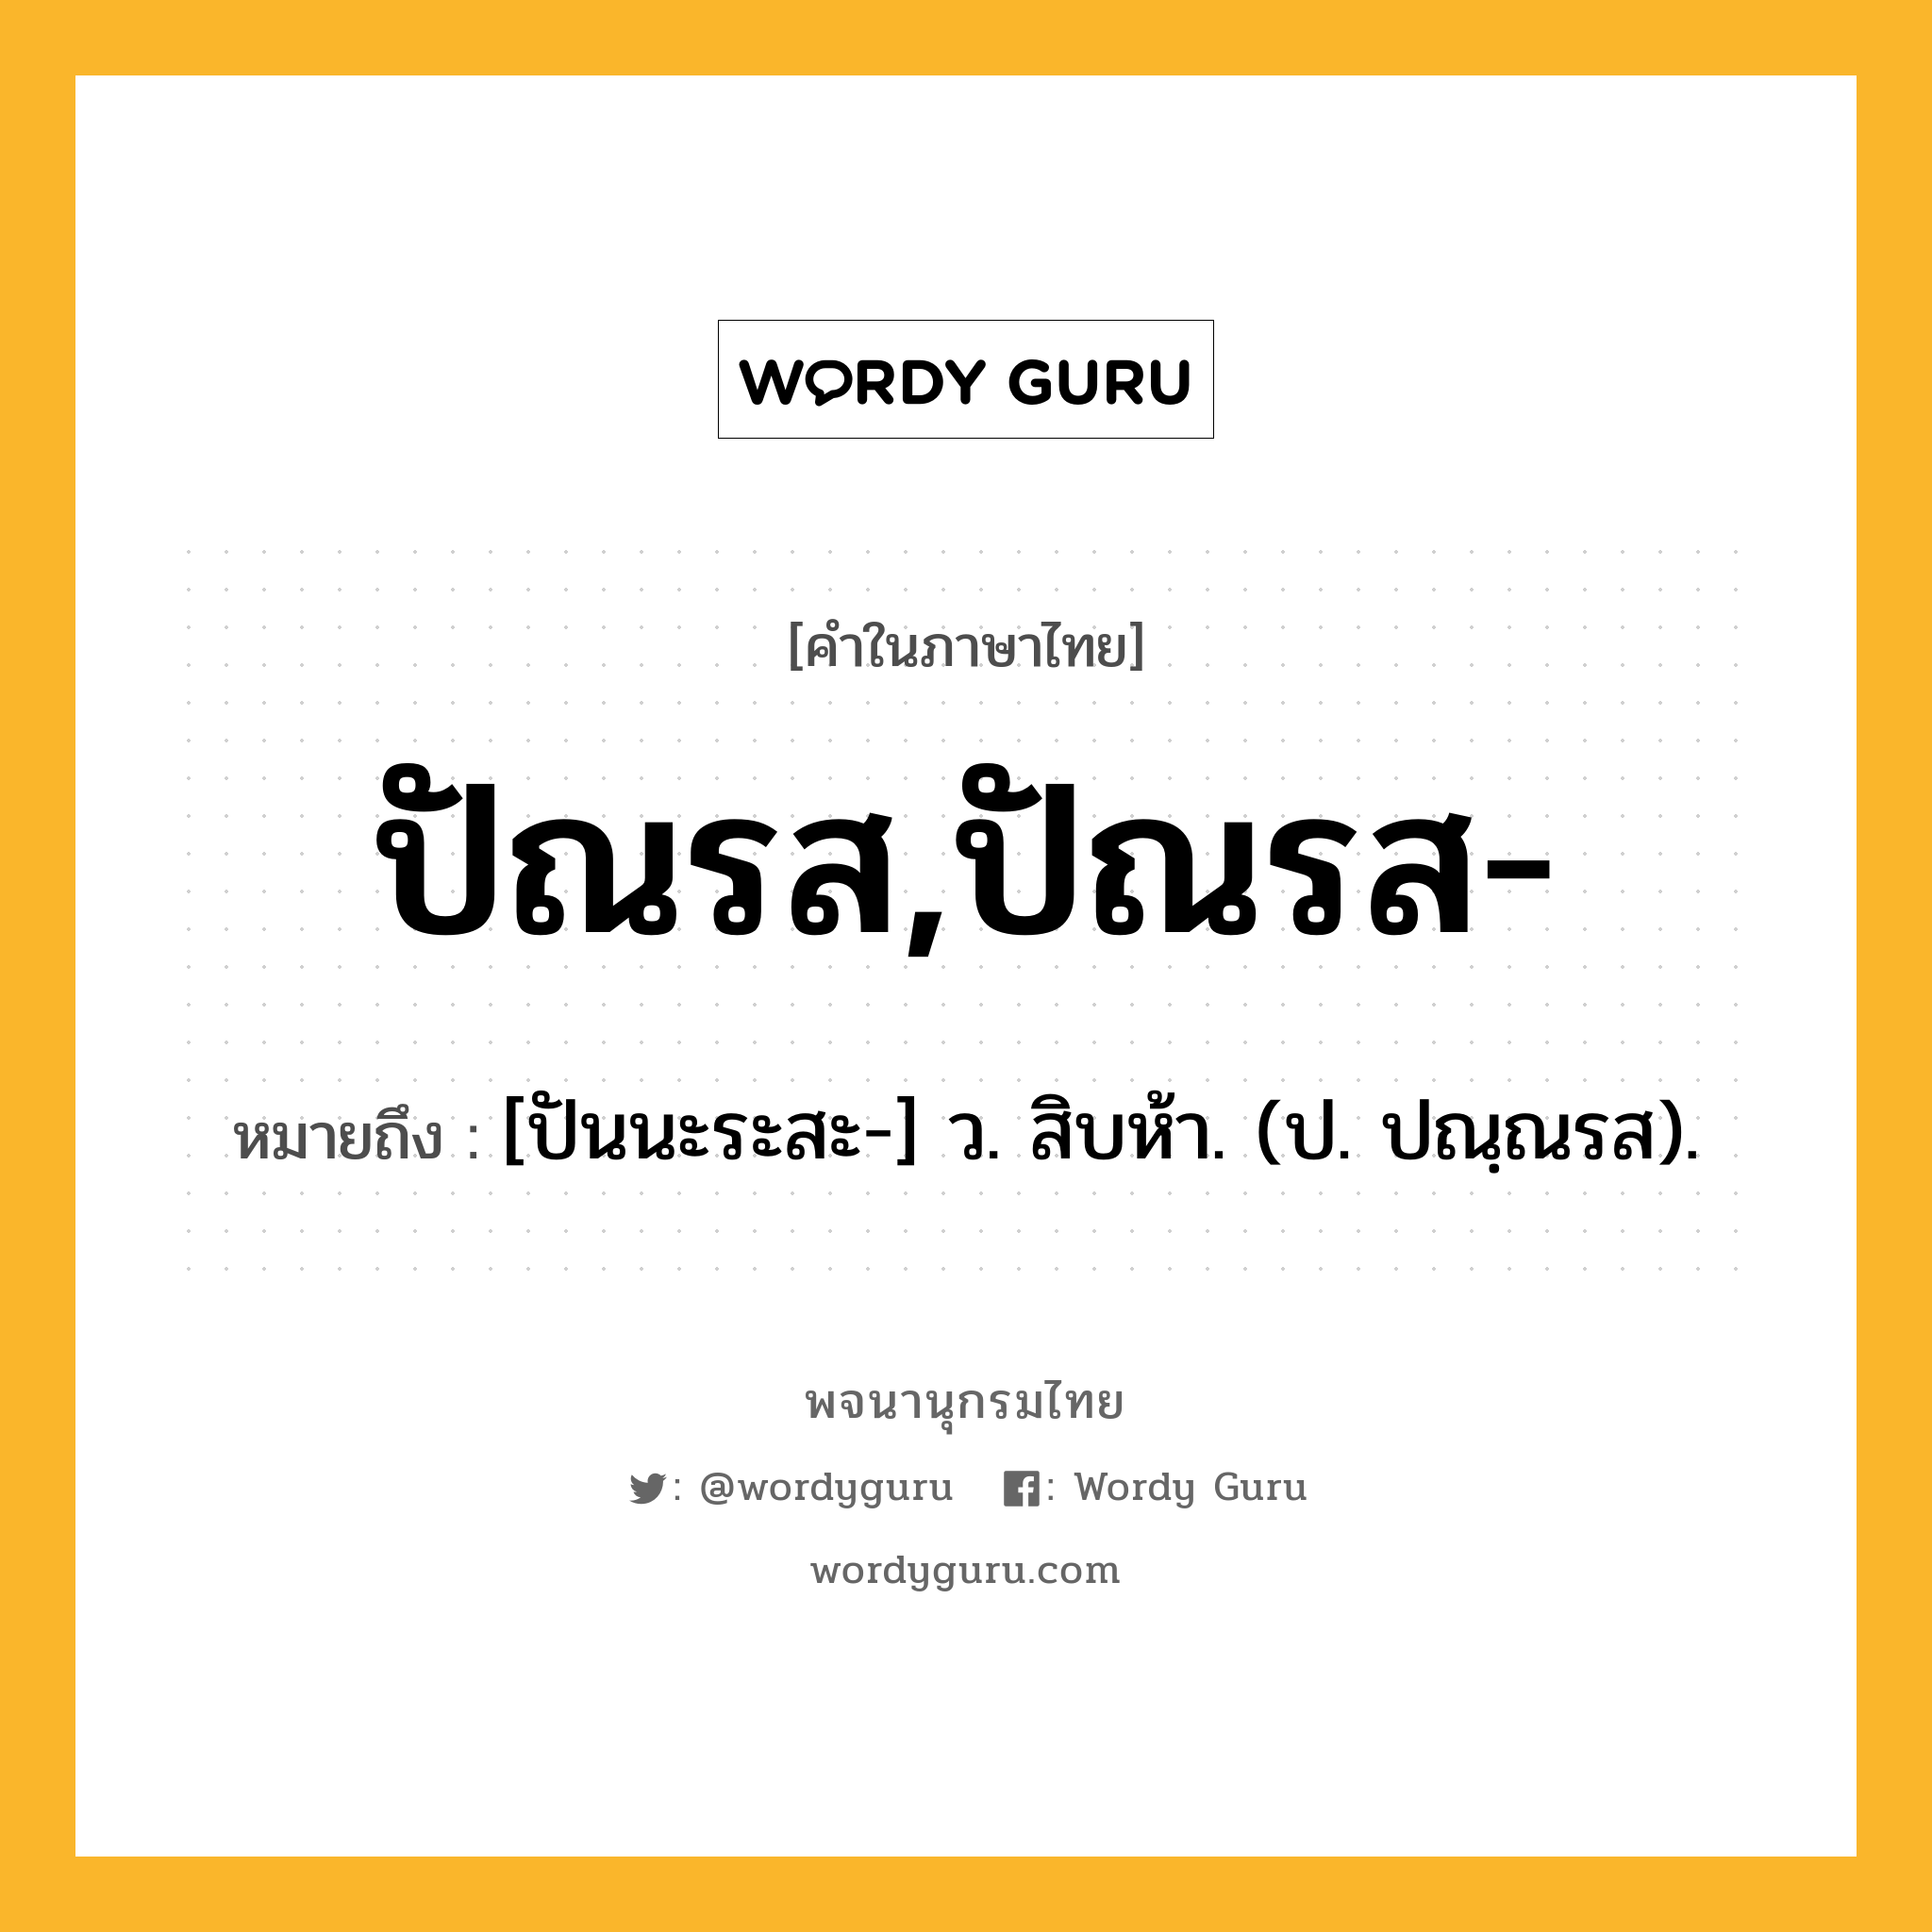 ปัณรส,ปัณรส- หมายถึงอะไร?, คำในภาษาไทย ปัณรส,ปัณรส- หมายถึง [ปันนะระสะ-] ว. สิบห้า. (ป. ปณฺณรส).